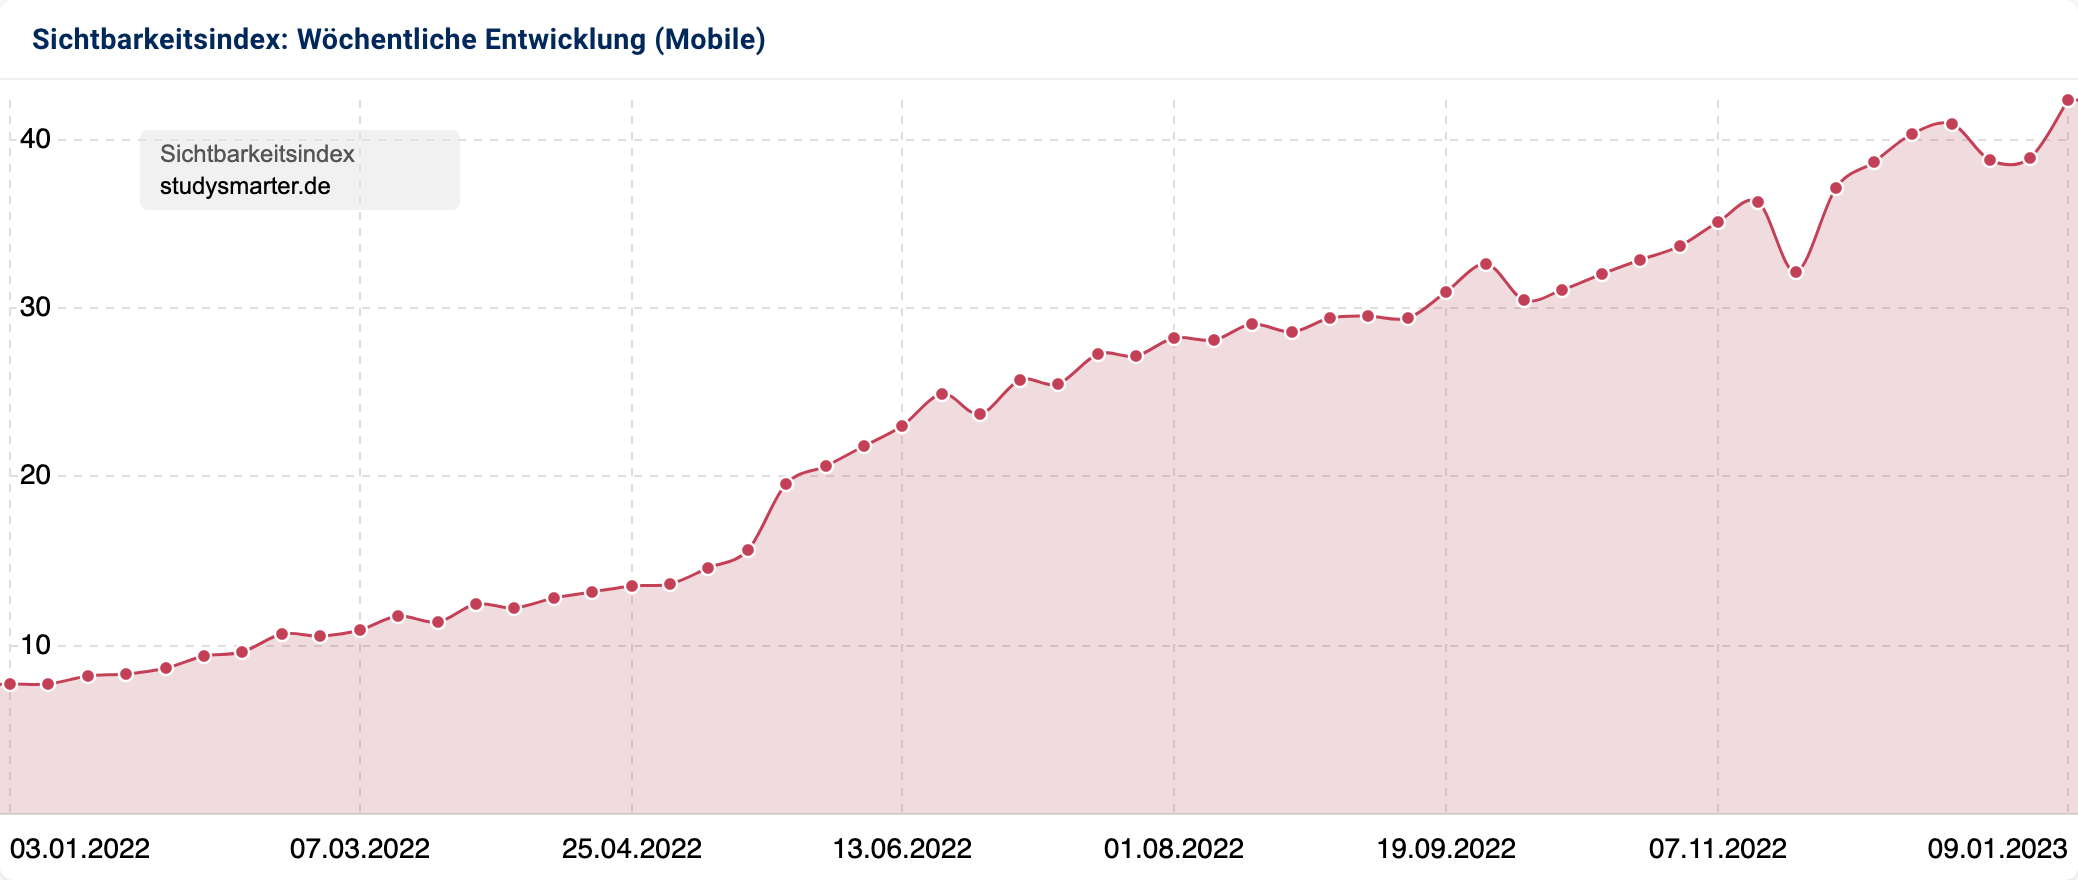 Der Sichtbarkeitsverlauf der Domain studysmarter.de in 2022. Die Domain stieg stetig in ihrer Sichtbarkeit und hatte nur kleinere Einbrüche.